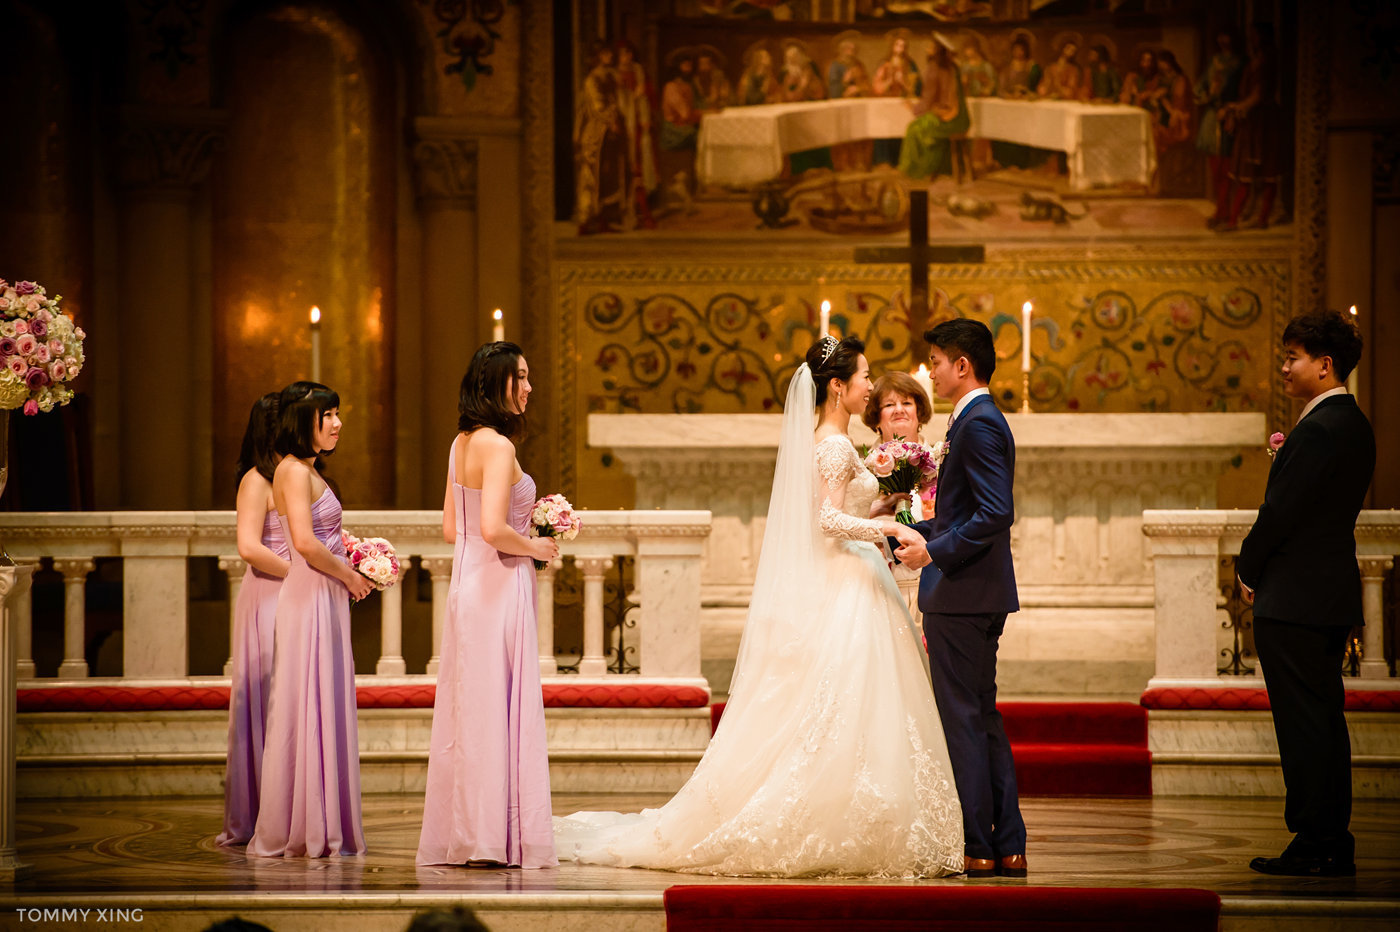 stanford memorial church wedding 旧金山湾区斯坦福教堂婚礼 Tommy Xing Photography 080.jpg